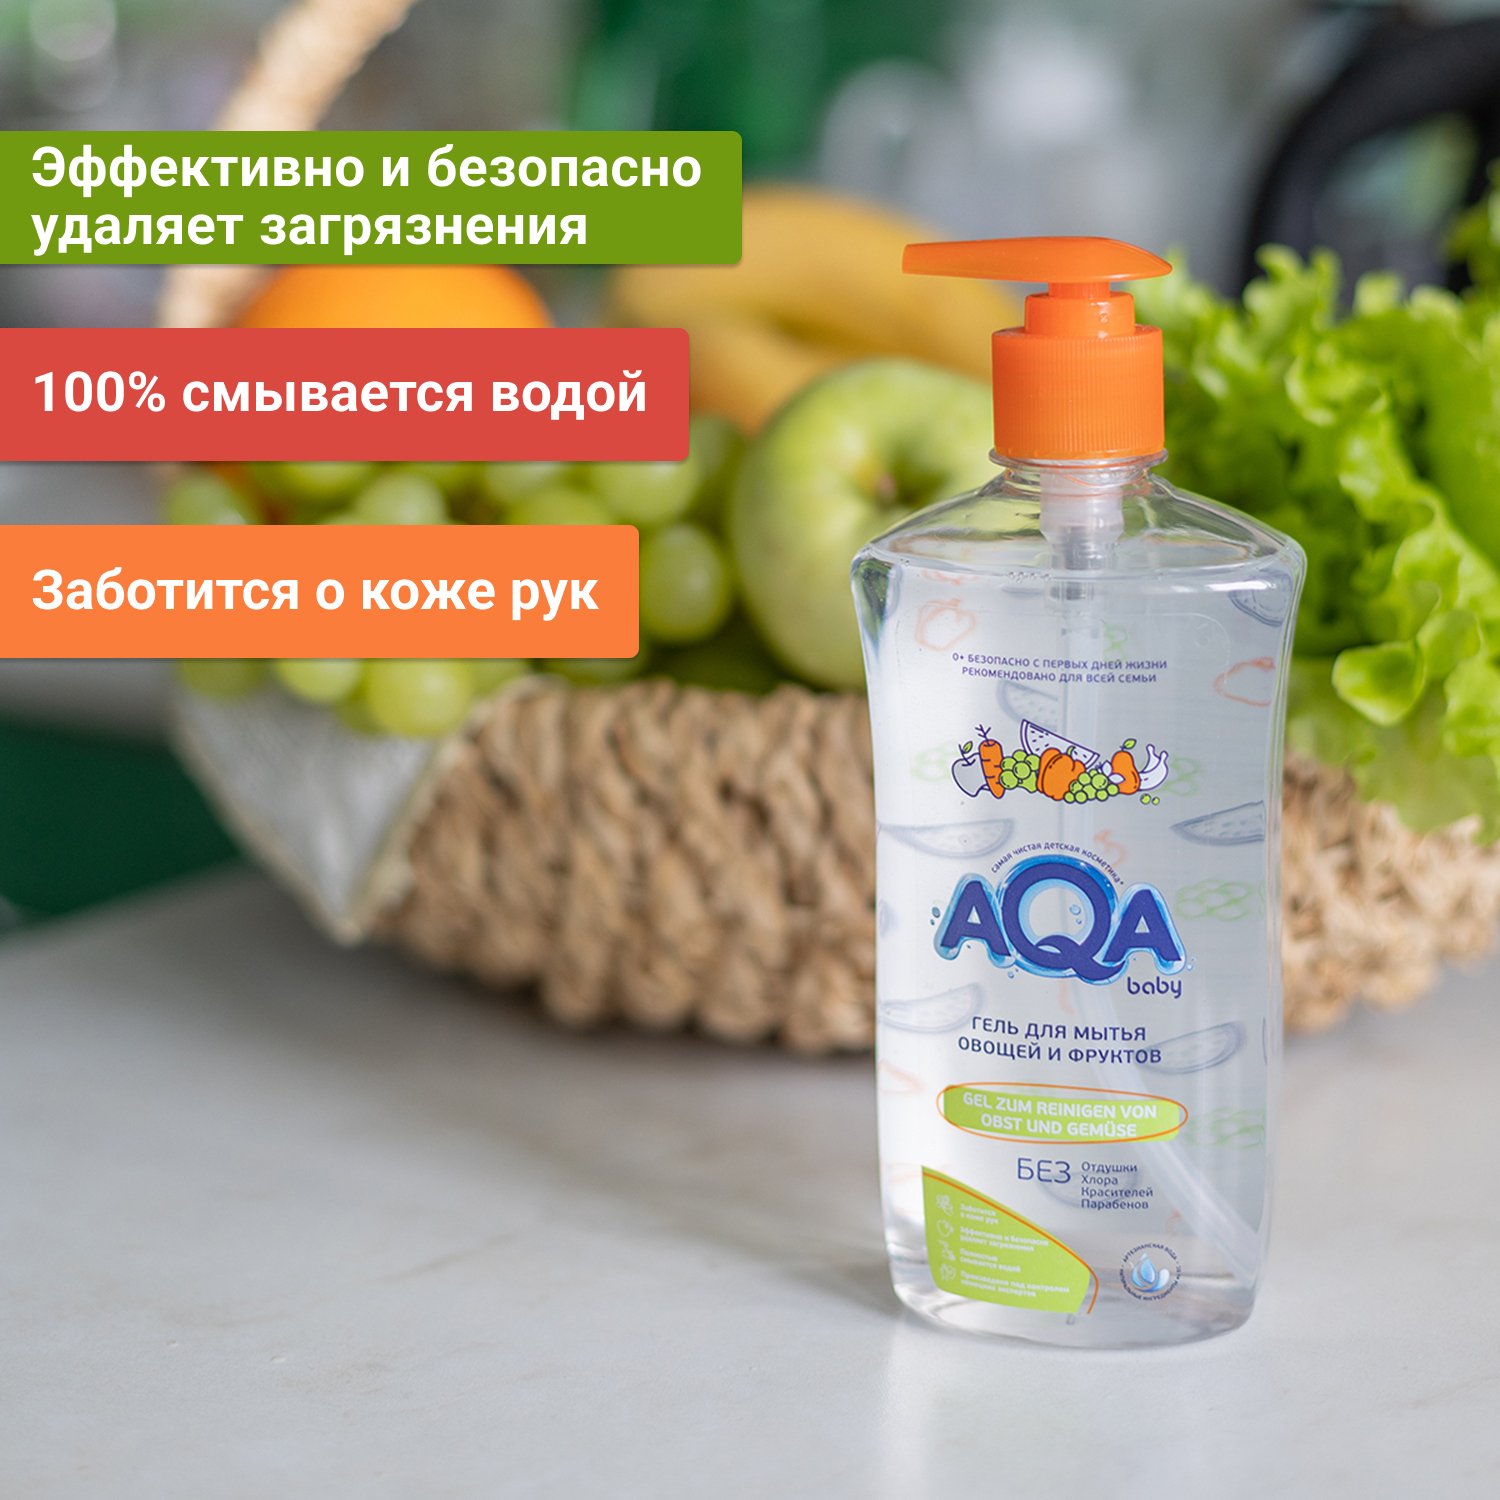 Гель для мытья овощей. AQA Baby гель для мытья овощей и фруктов, 500 мл. Гель для мытья овощей и фруктов Аква.